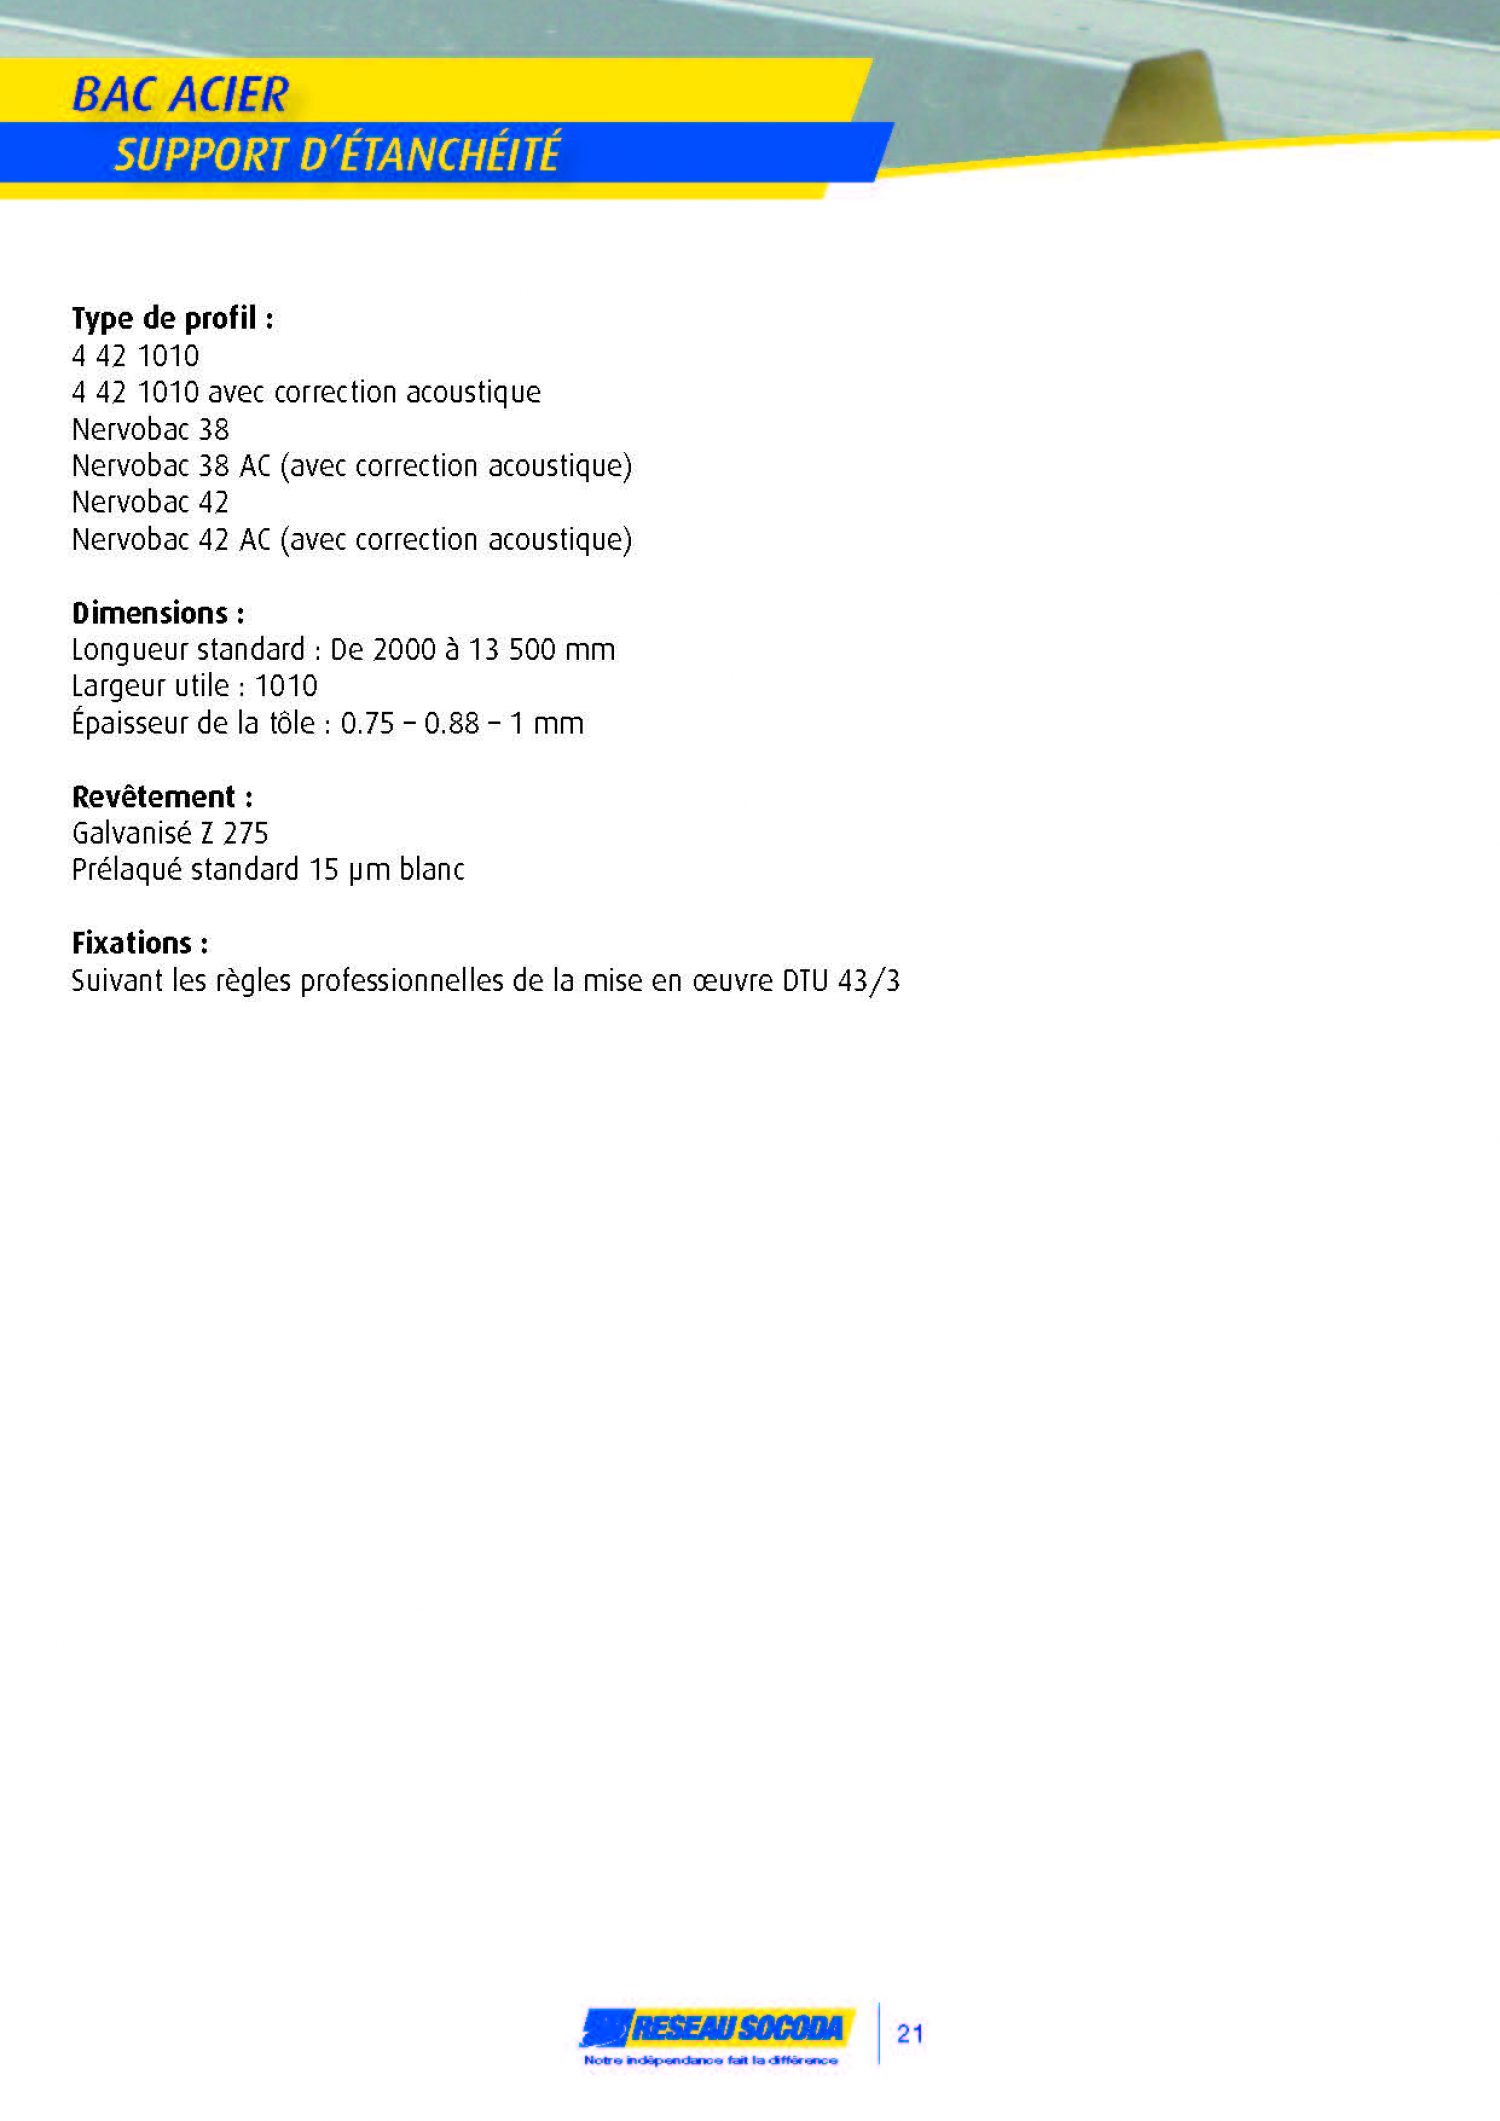 GERMOND_2014 PROFIL BATIMENT_20140324-184231_Page_21